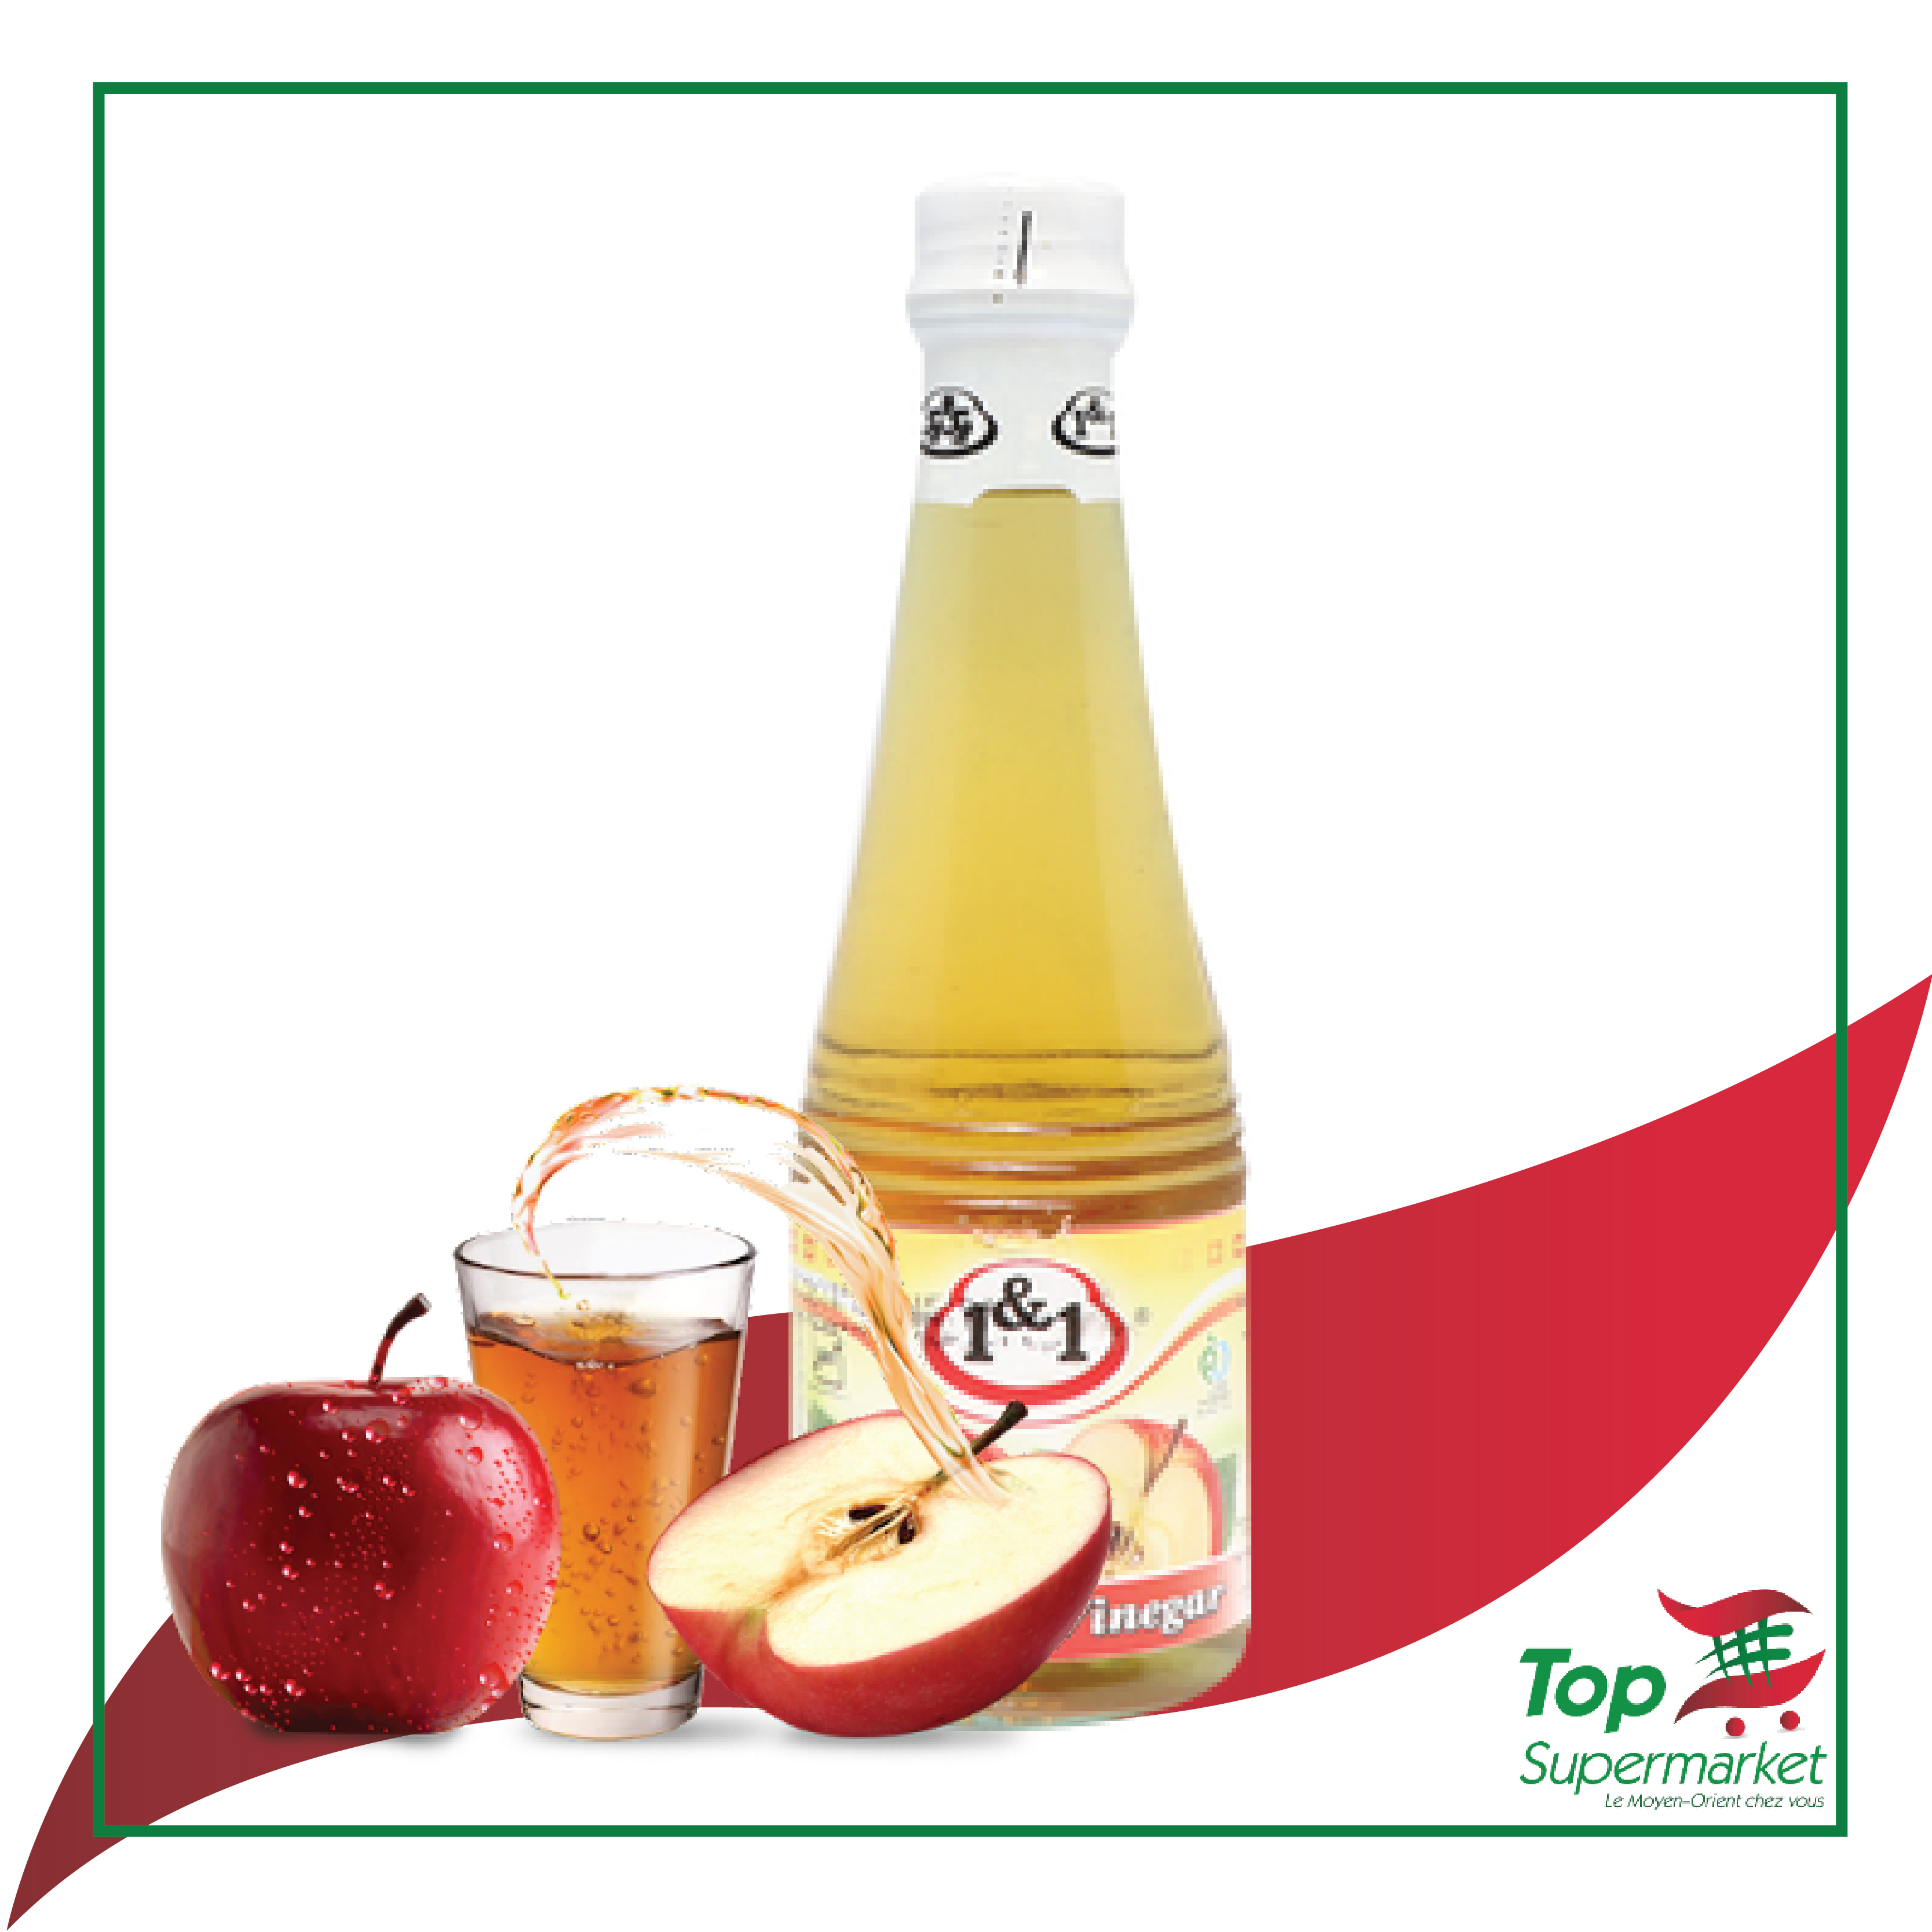 1&1 Apple Vinegar 330ml